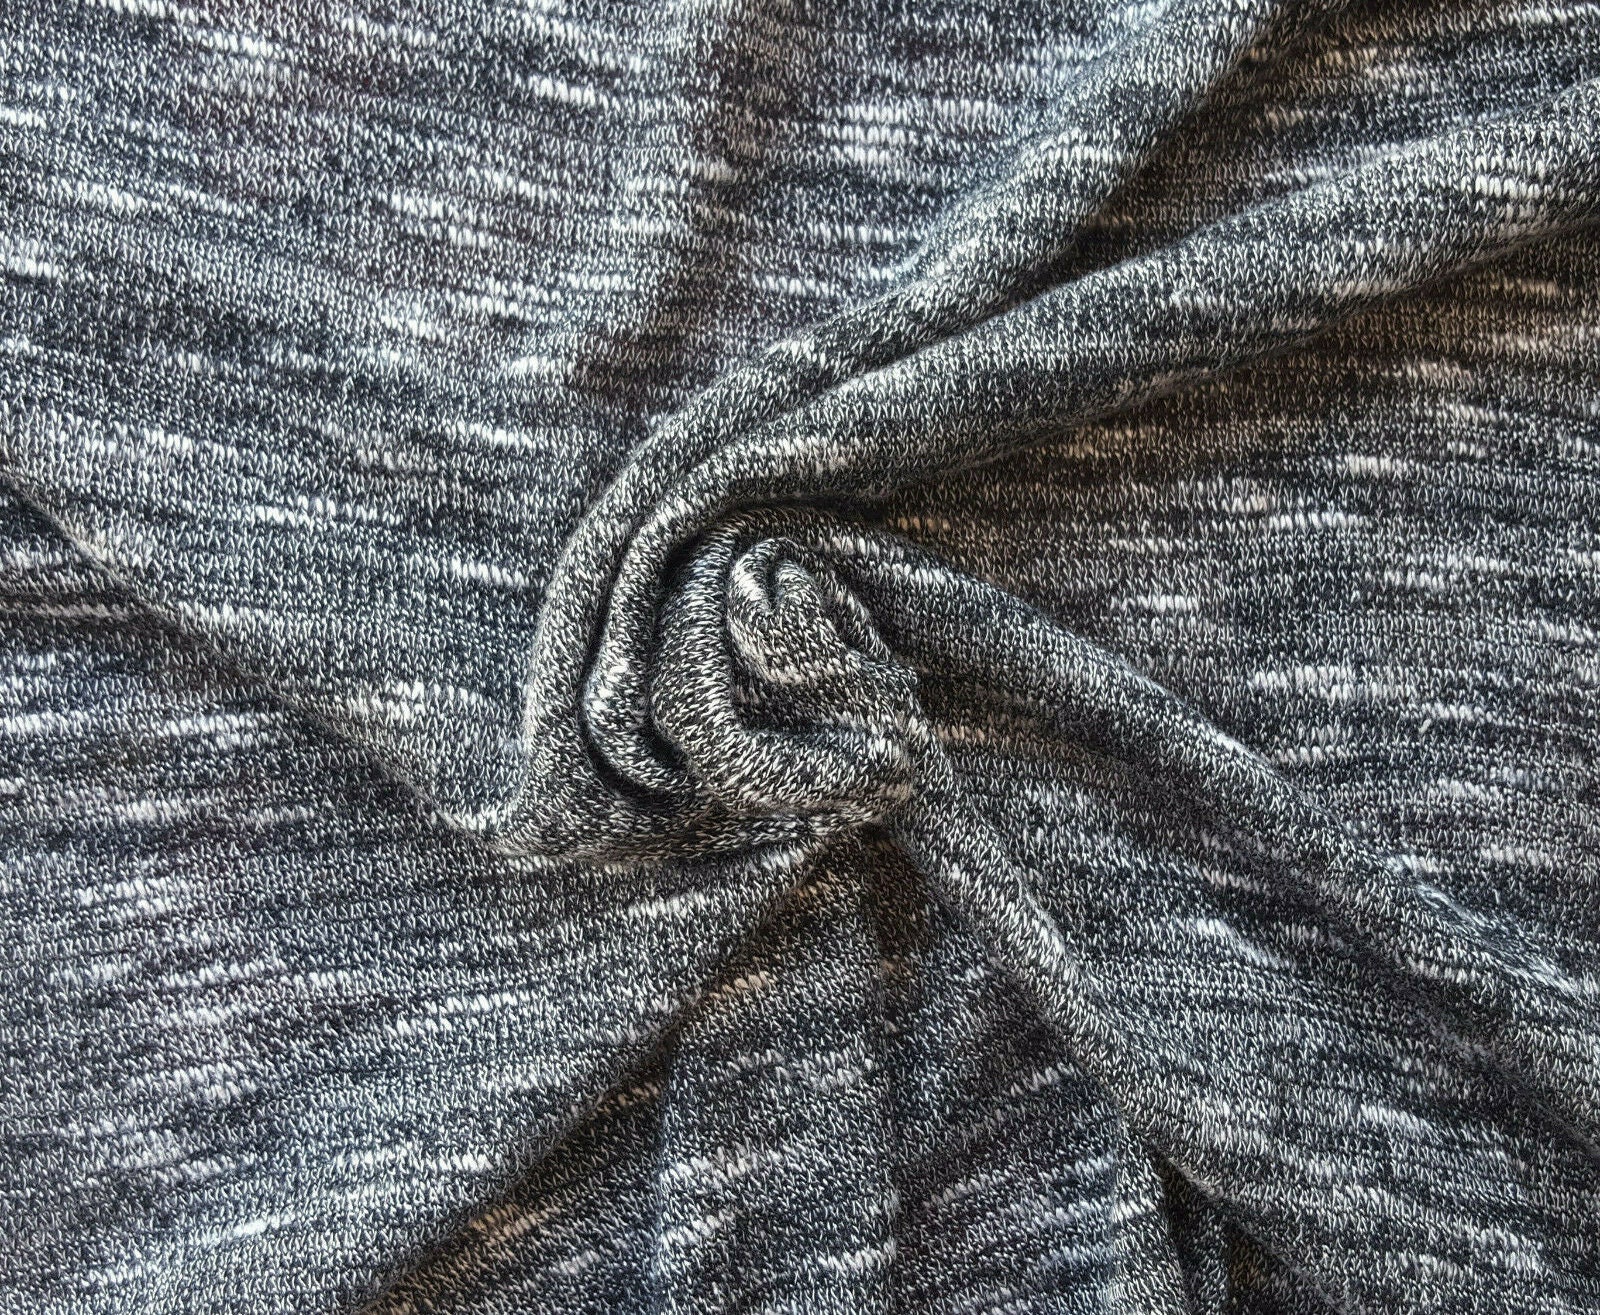 Black Knit Fabric, Rayon Jersey Knit Fabric, Causal Jersey Knit Fabric,  Knitting Fabric by The Yard - 1 Yard